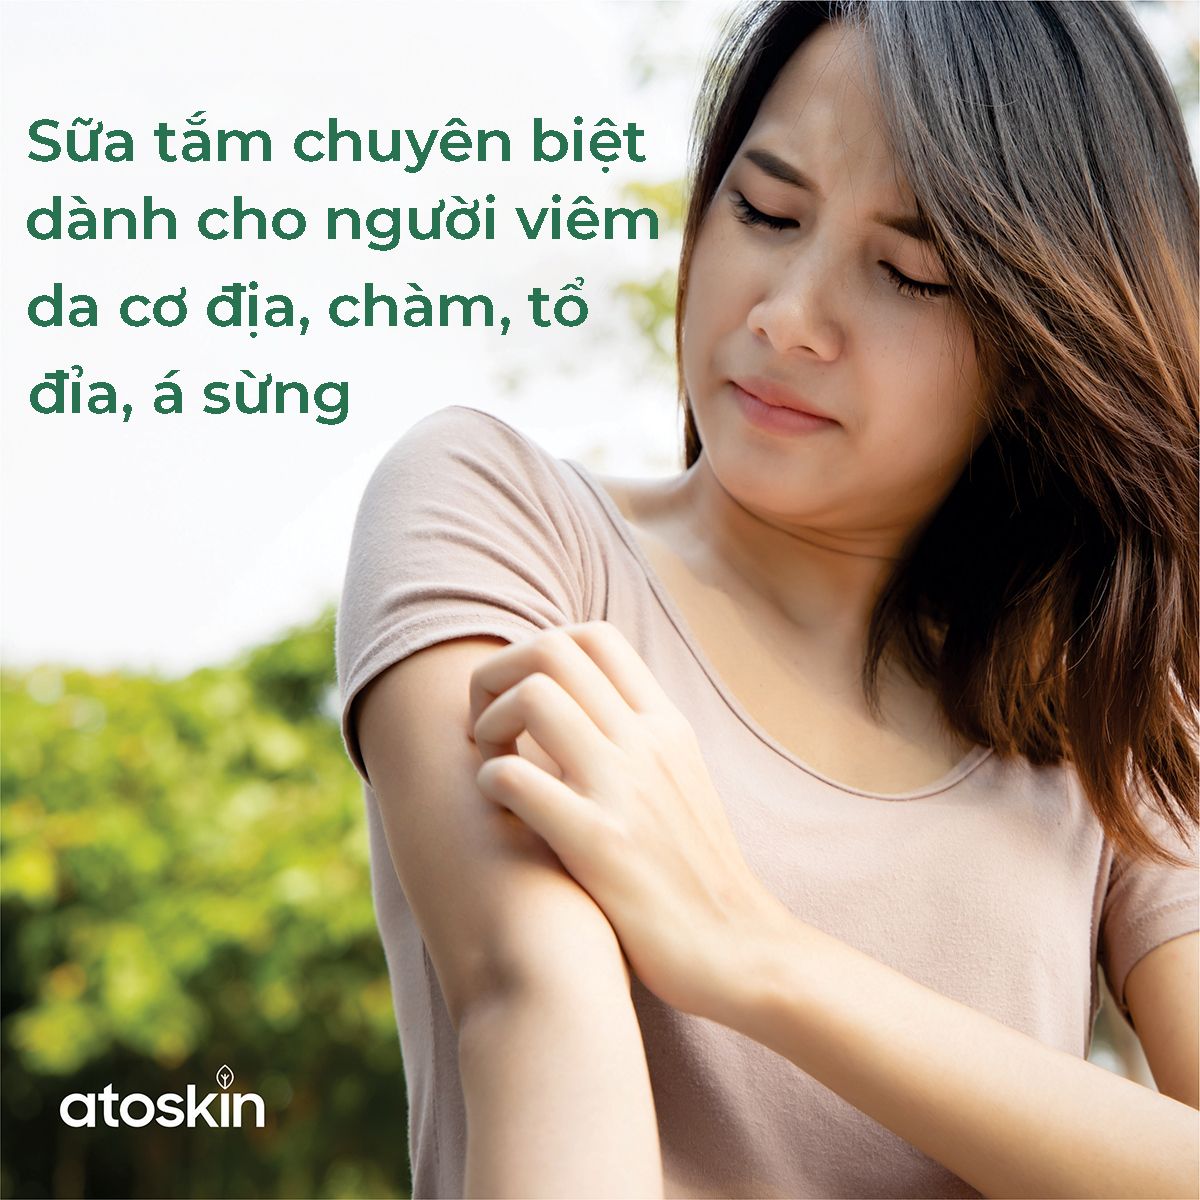 Atoskin - Sữa tắm chuyên biệt dành cho người viêm da cơ địa, chàm, tổ đỉa, á sừng